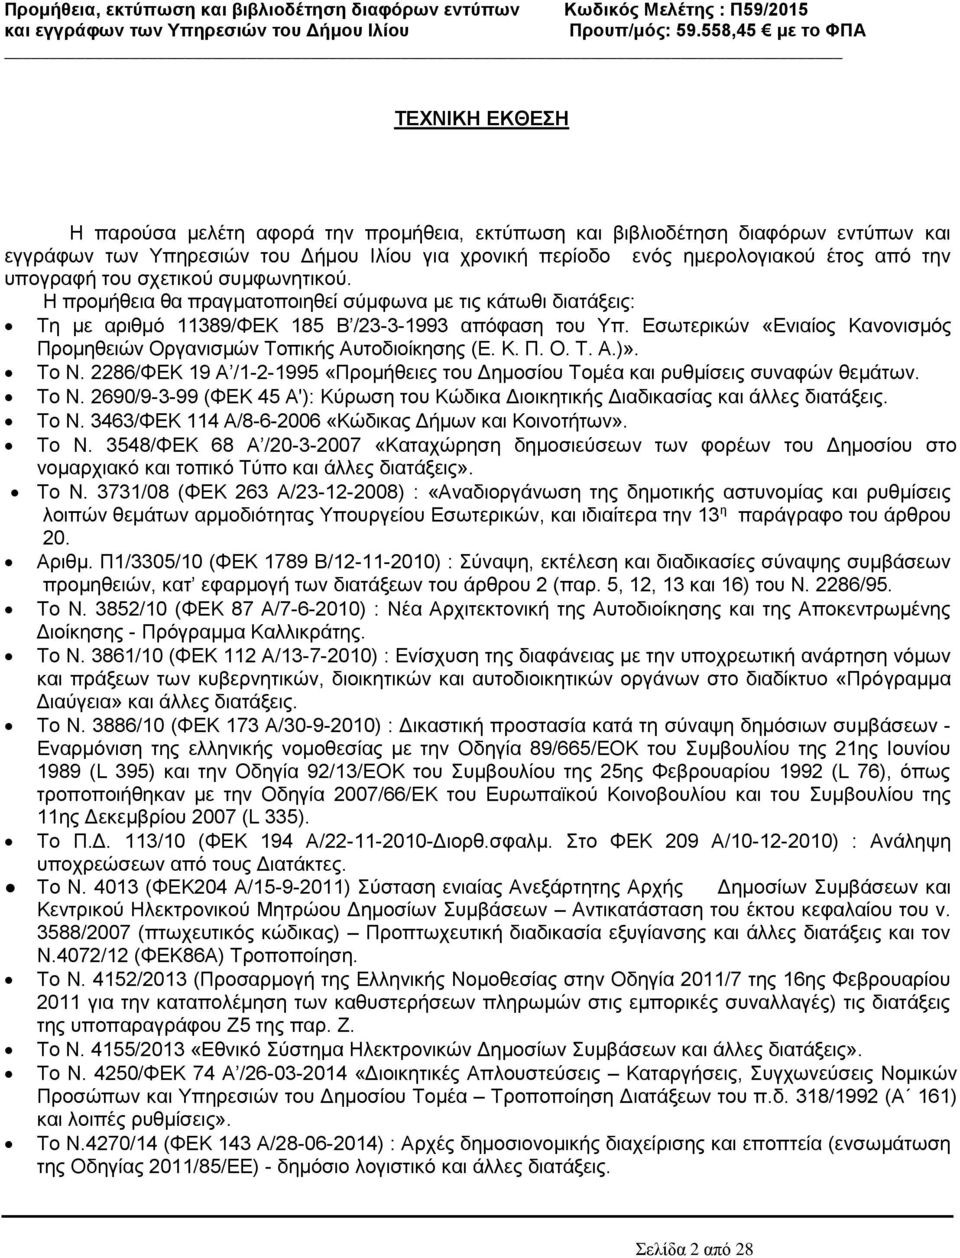 Εσωτερικών «Ενιαίος Κανονισμός Προμηθειών Οργανισμών Τοπικής Αυτοδιοίκησης (Ε. Κ. Π. Ο. Τ. Α.)». Το Ν. 2286/ΦΕΚ 19 Α /1-2-1995 «Προμήθειες του Δημοσίου Τομέα και ρυθμίσεις συναφών θεμάτων. Το Ν. 2690/9-3-99 (ΦΕΚ 45 Α'): Κύρωση του Κώδικα Διοικητικής Διαδικασίας και άλλες διατάξεις.